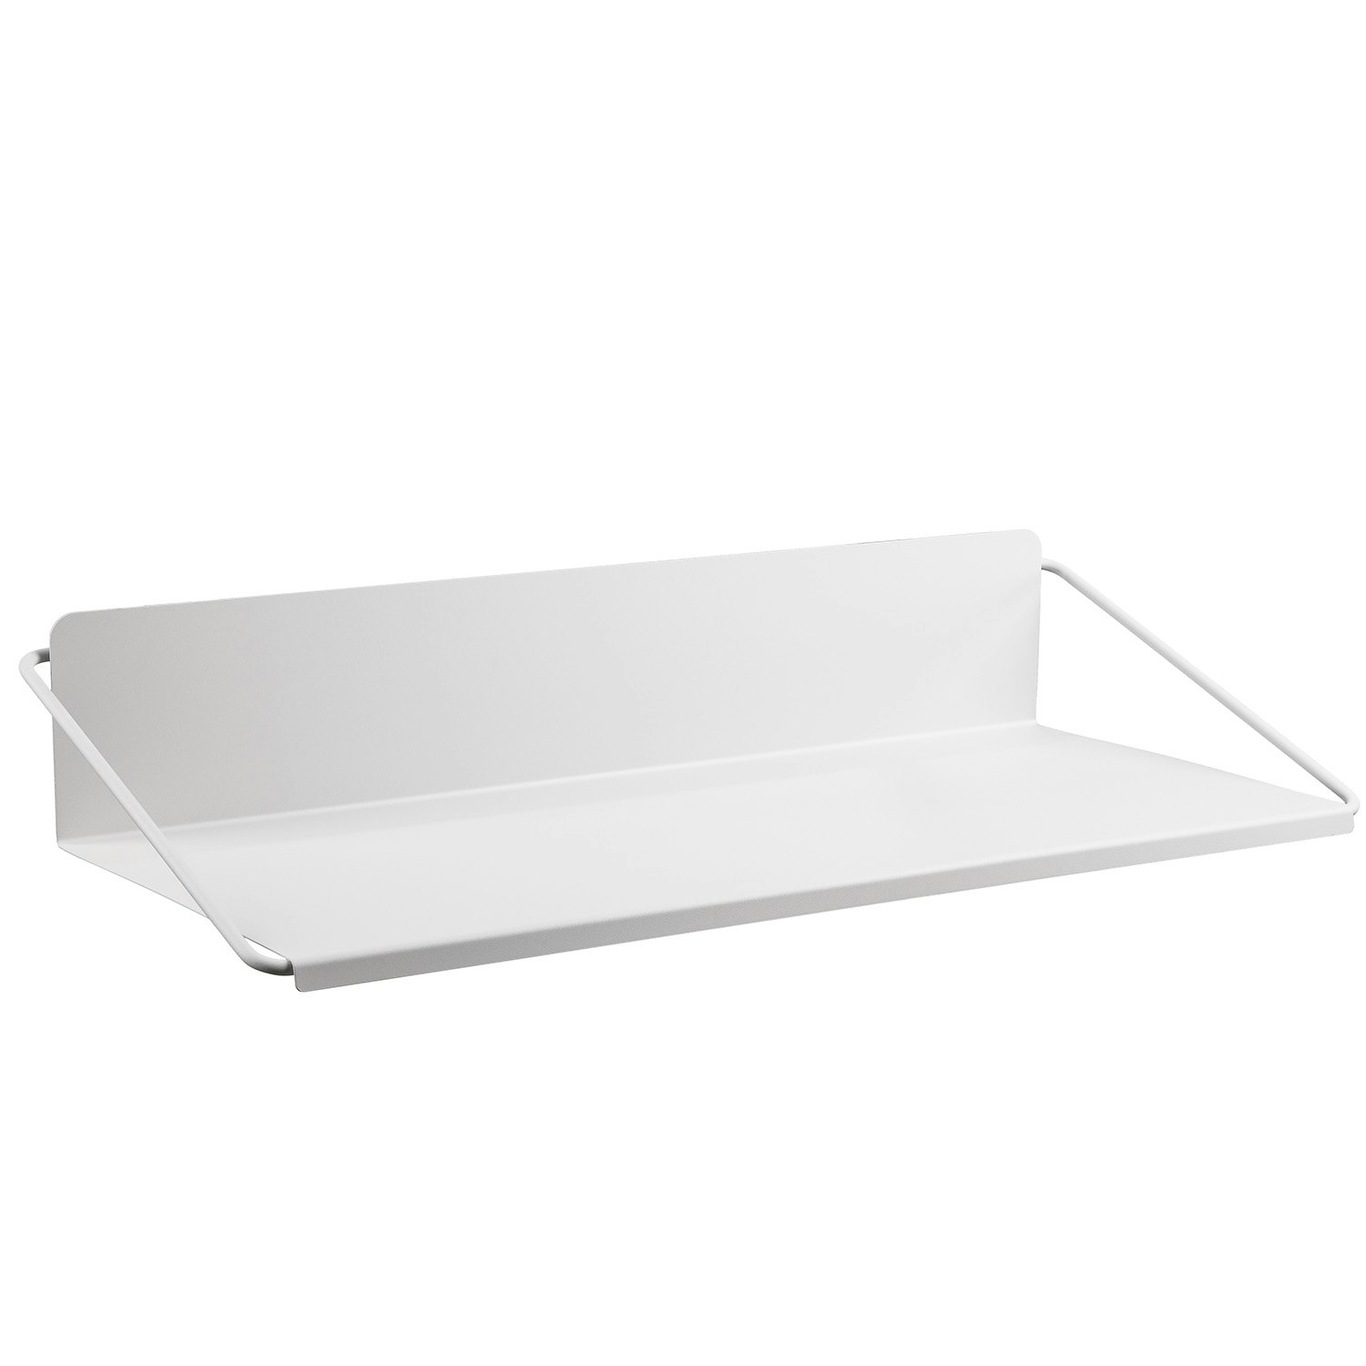 A-Wall Desk 95 cm, Soft Grey